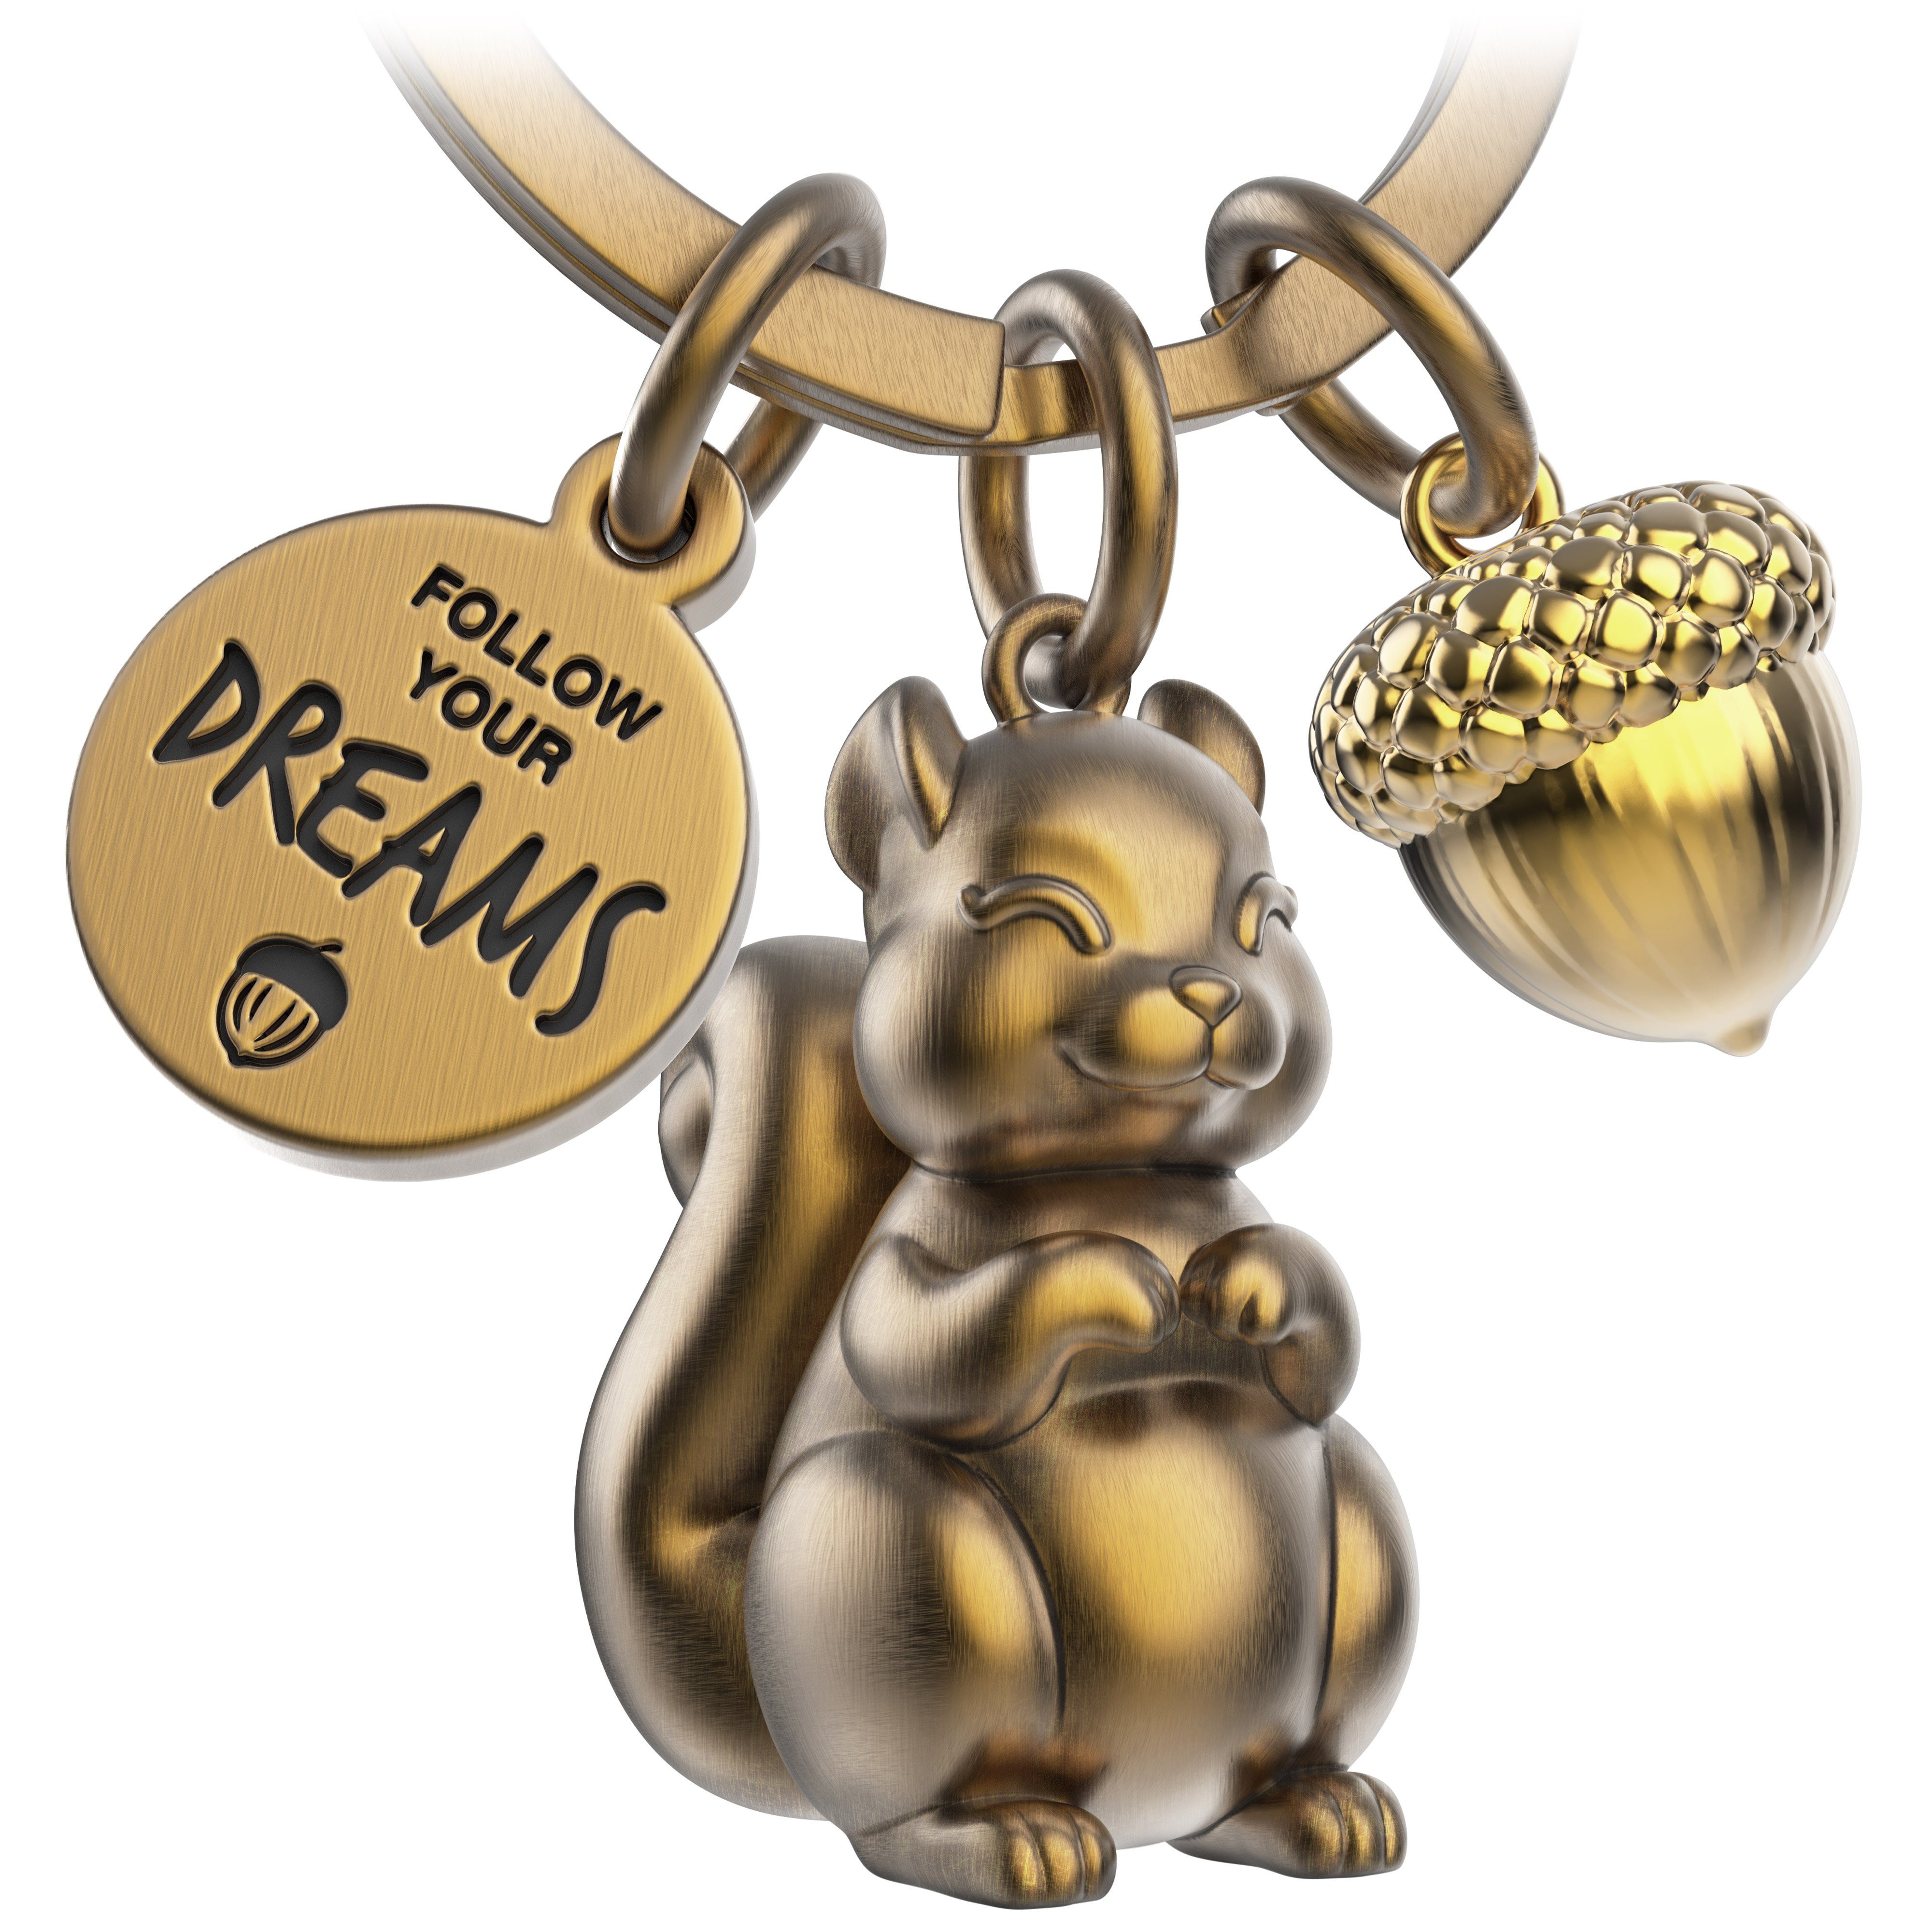 Glücksbringer Schlüsselanhänger Antique Eichhörnchen Bronze Your - Dreams Mutmacher - Skippy FABACH Follow